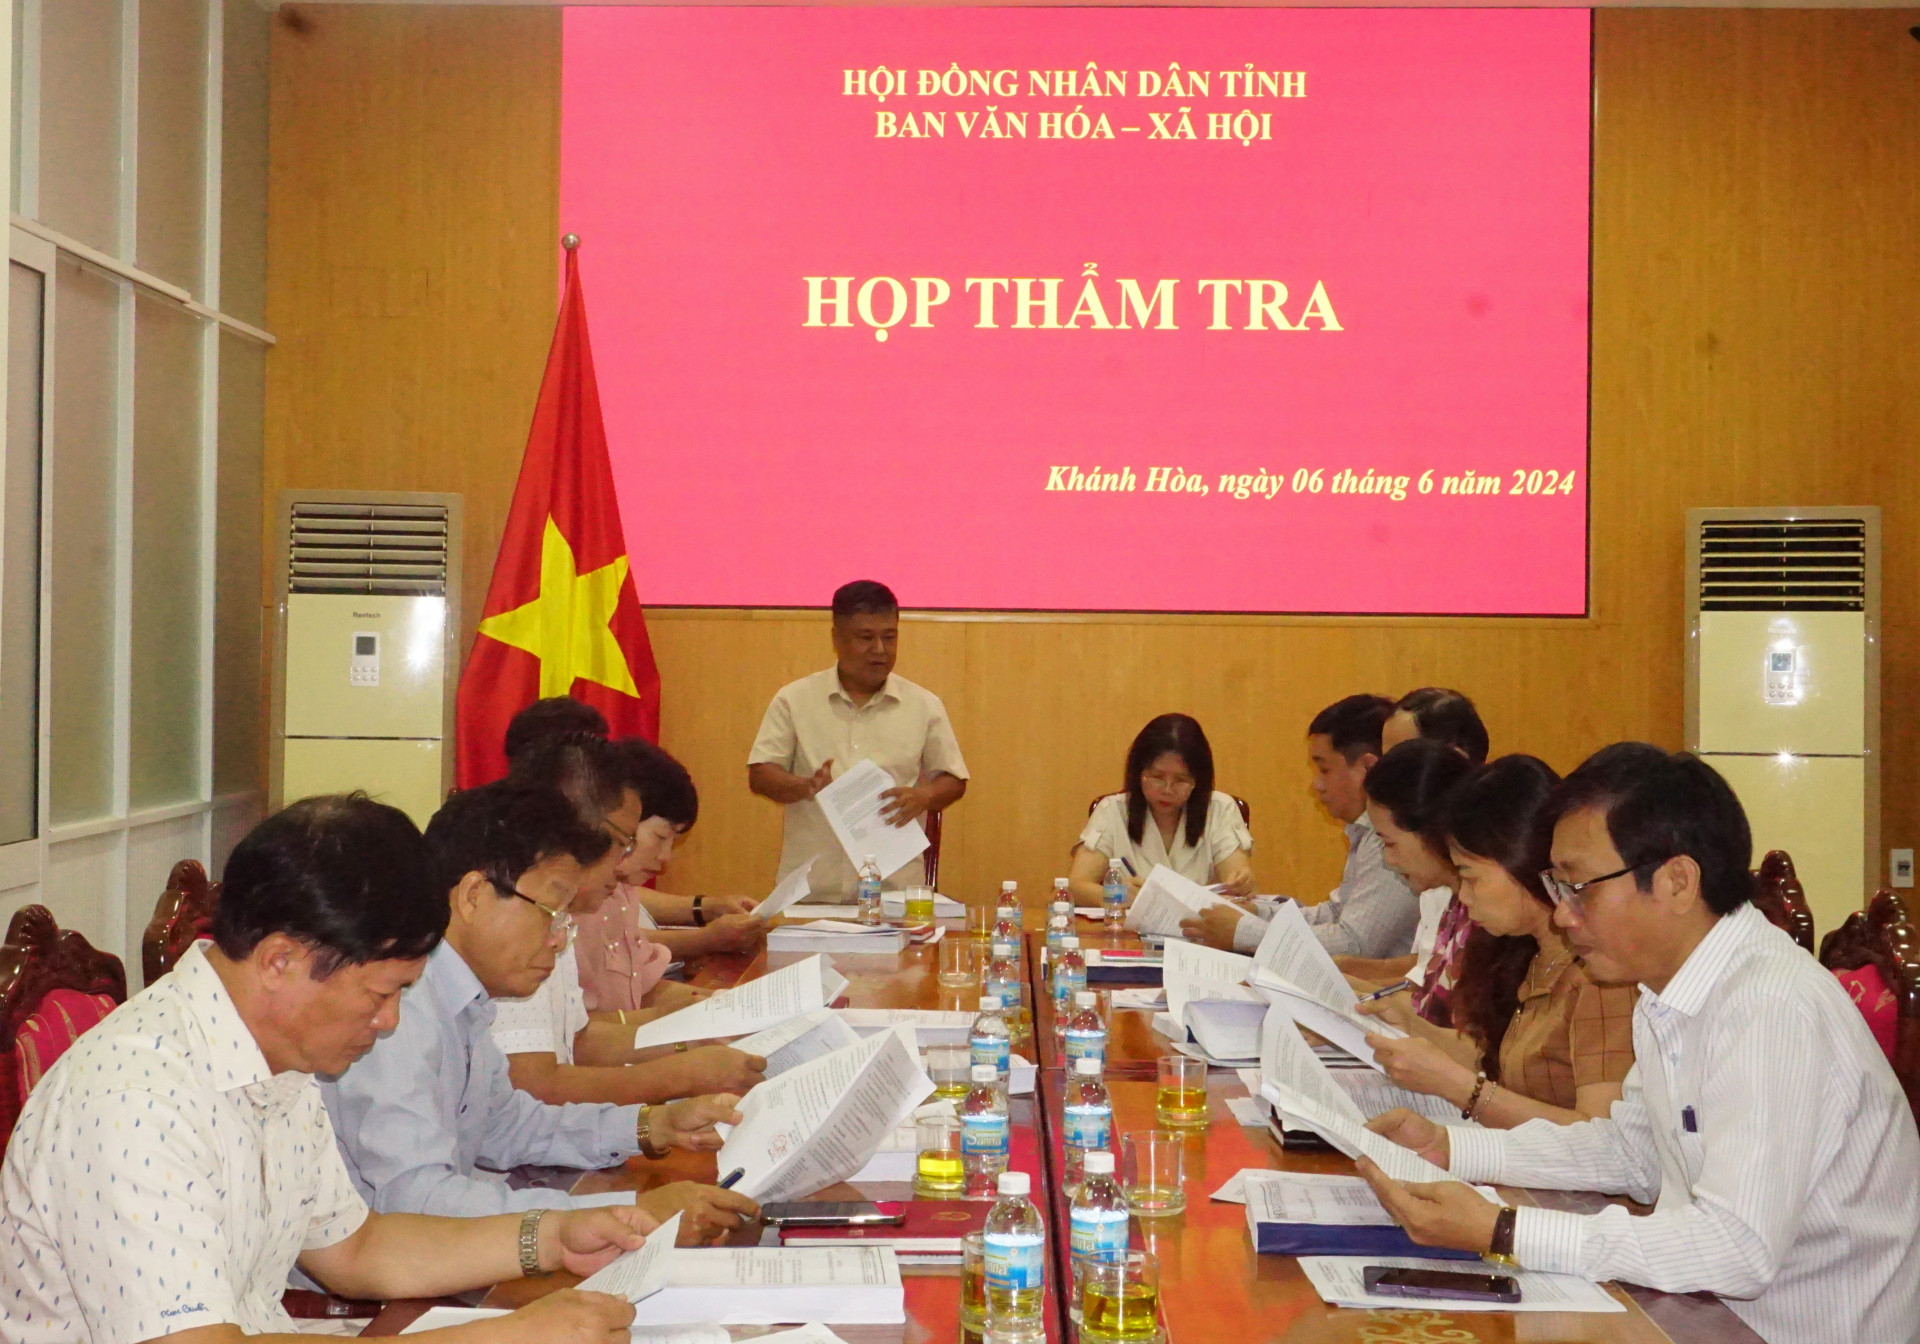 Quang cảnh tại cuộc họp thẩm tra của Ban Văn hóa - Xã hội HĐND tỉnh